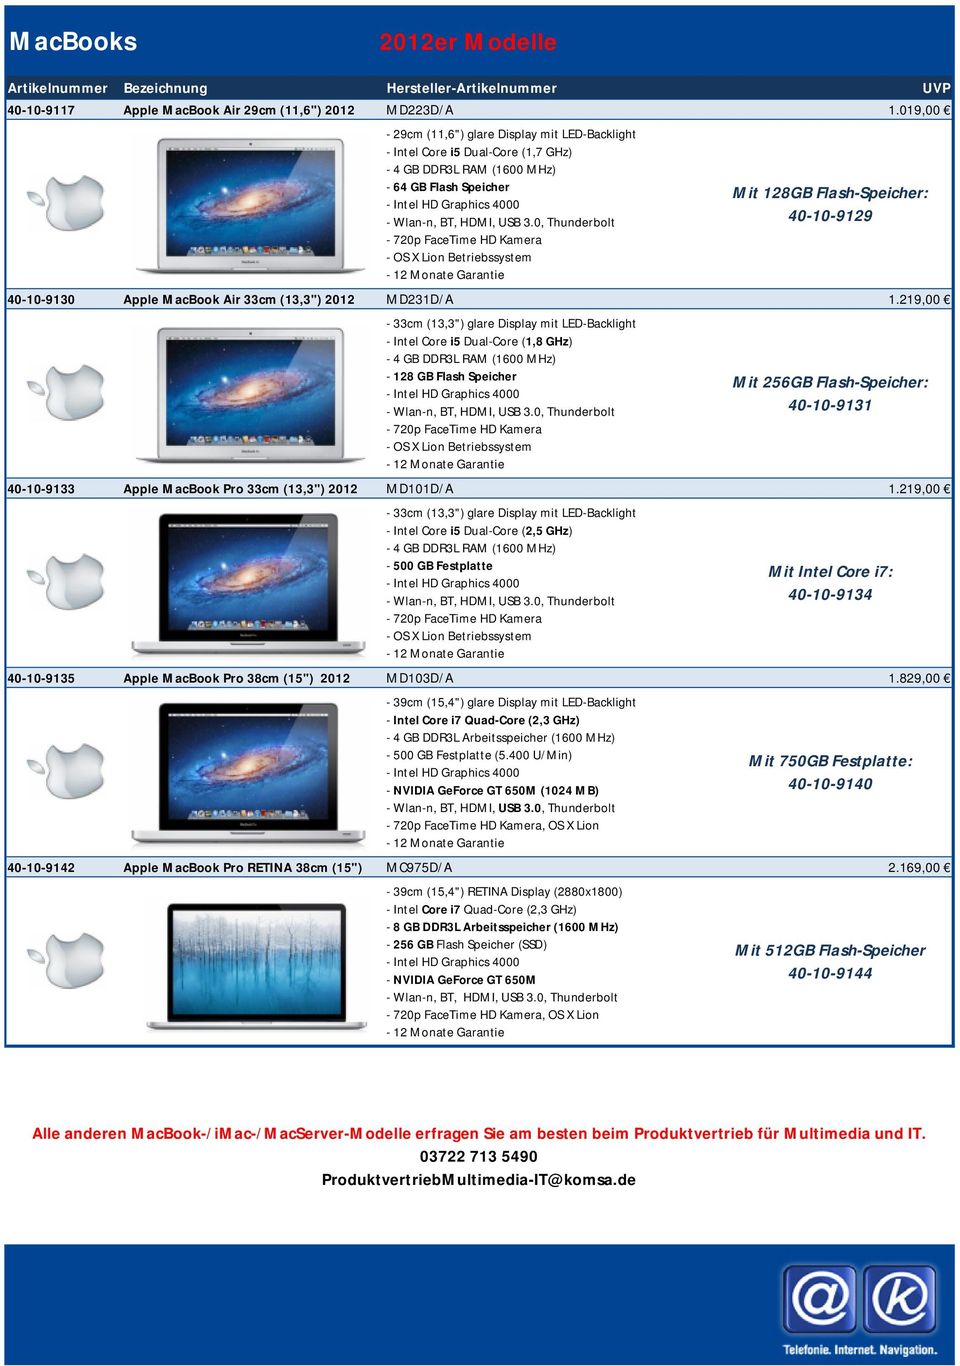 0, Thunderbolt - 720p FaceTime HD Kamera - OS X Lion Betriebssystem - 12 Monate Garantie 40-10-9130 Apple MacBook Air 33cm (13,3") 2012 MD231D/A 1.